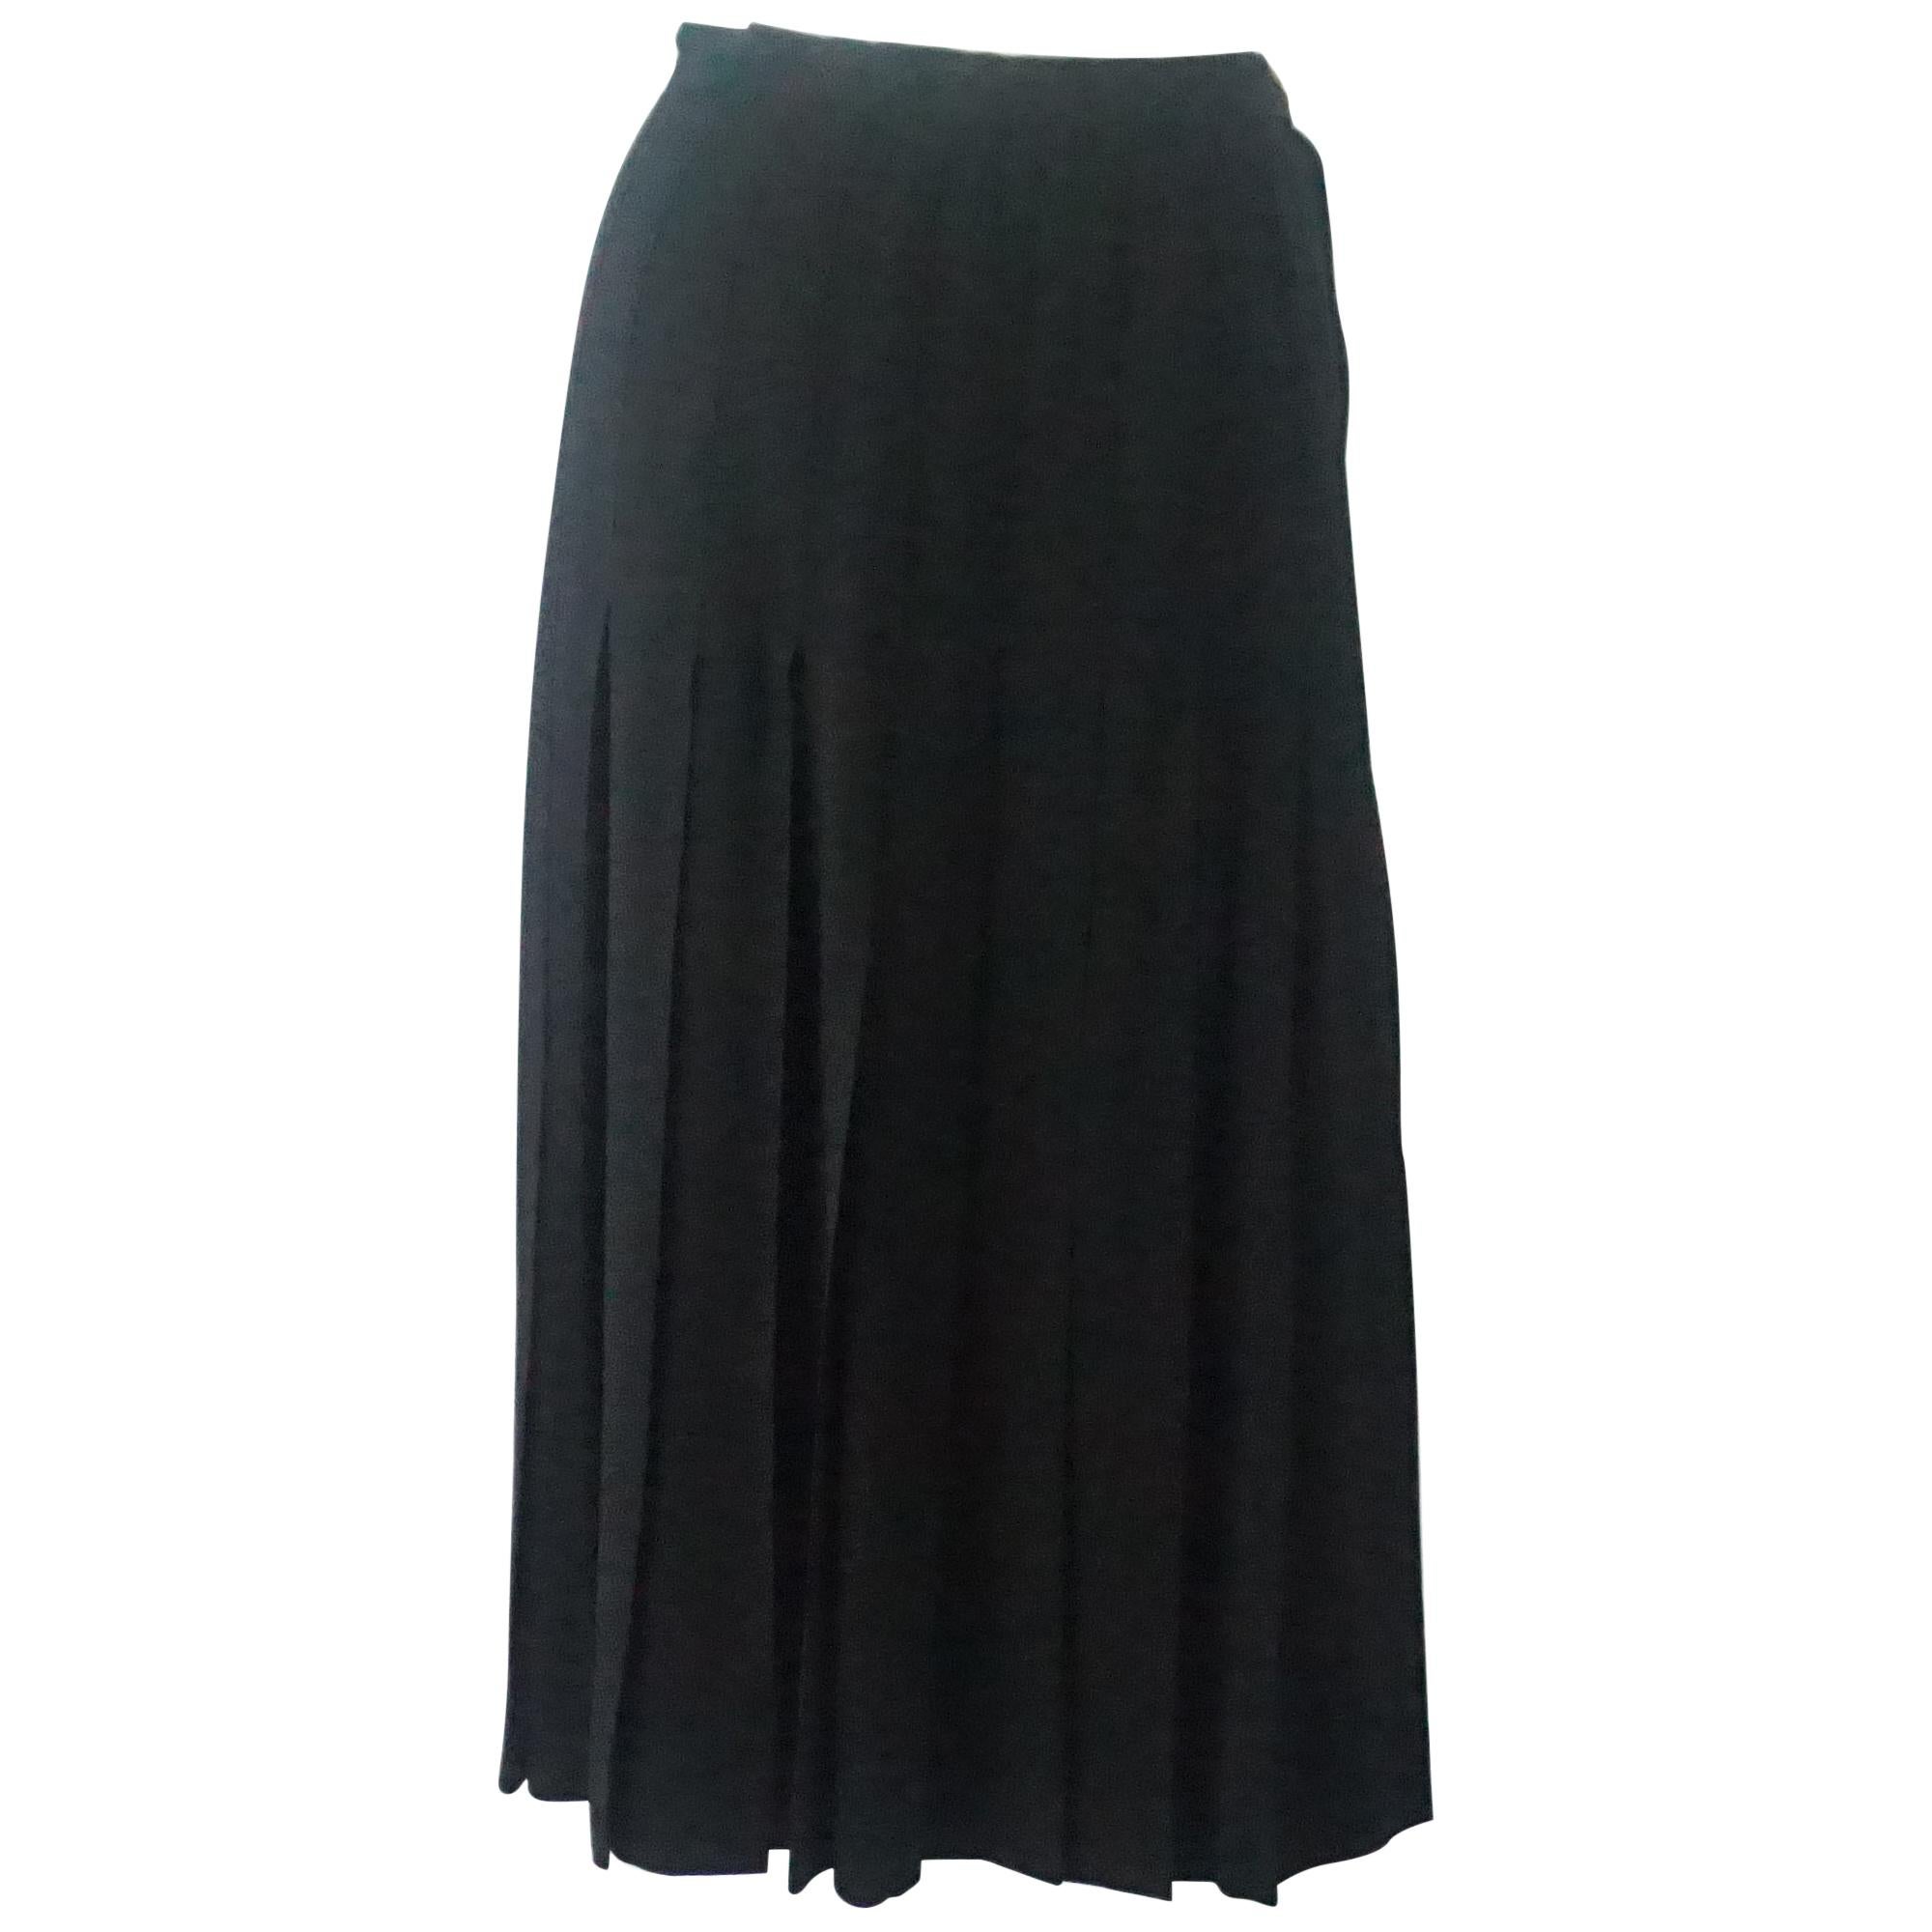 Chanel Vintage Falda Plisada de Seda Negra - 38